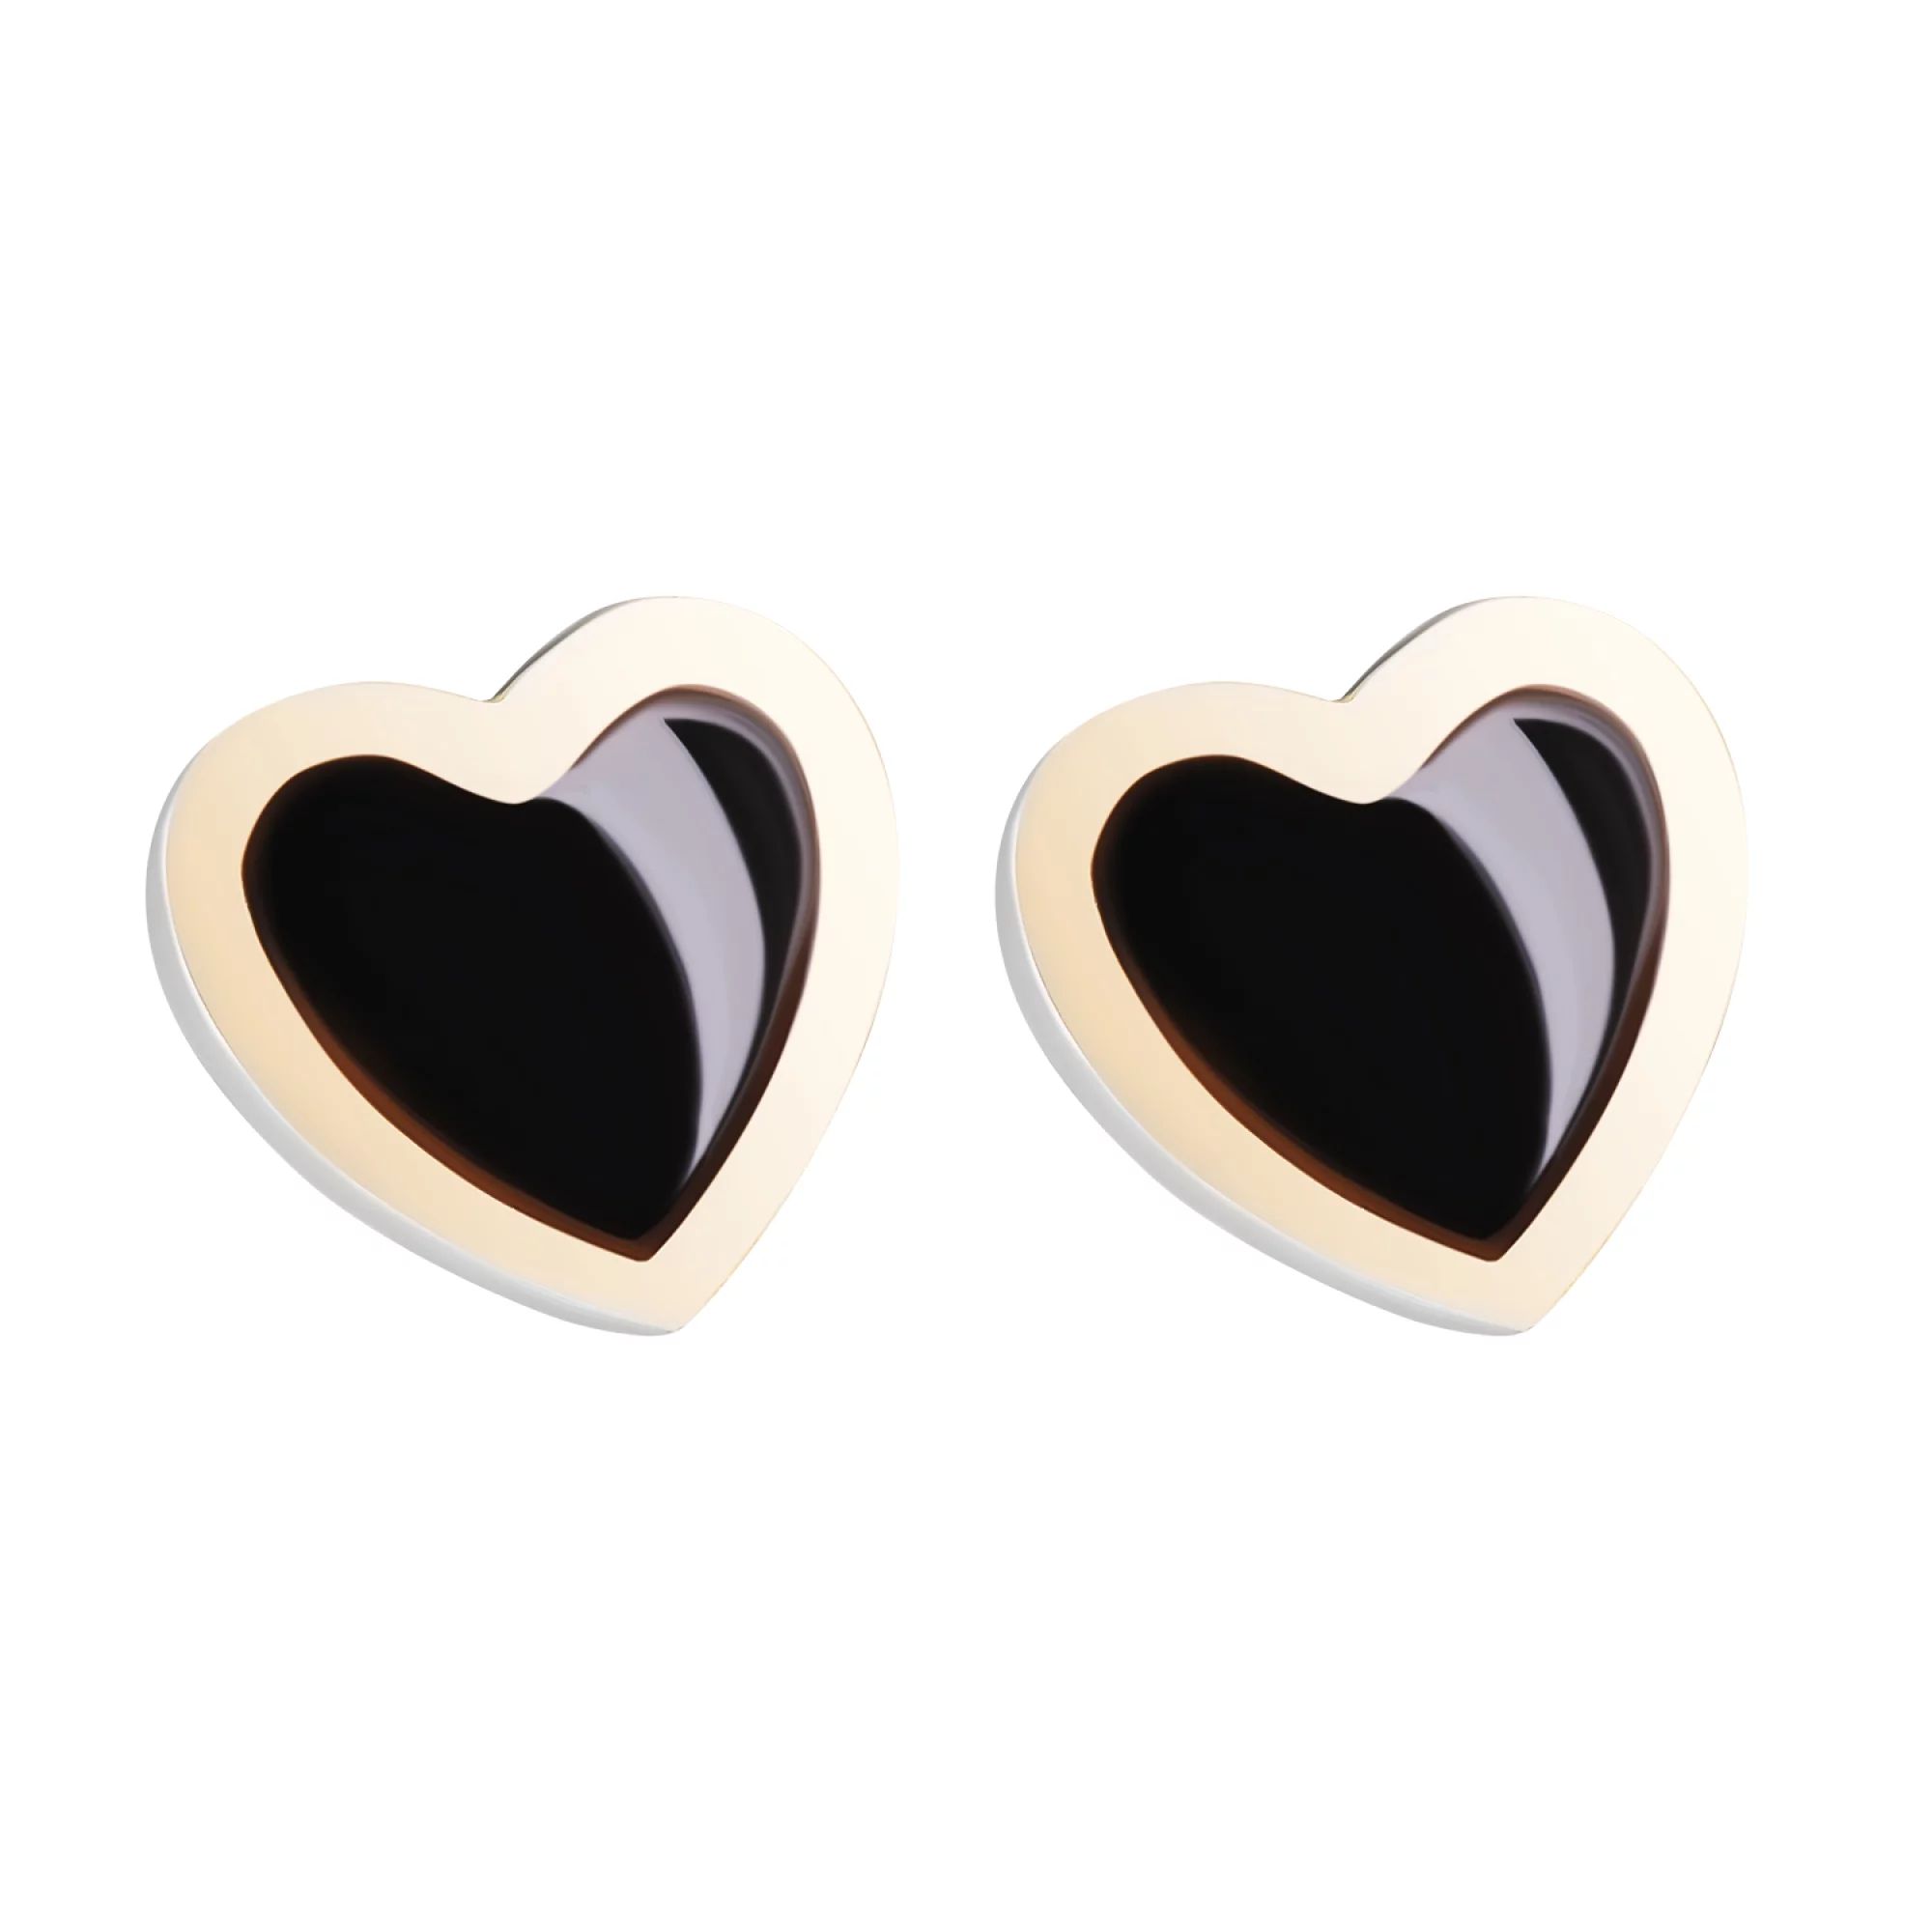 Срібні сережки-гвоздики "Сердечко" з позолотою та емаллю - 1611323 – зображення 1